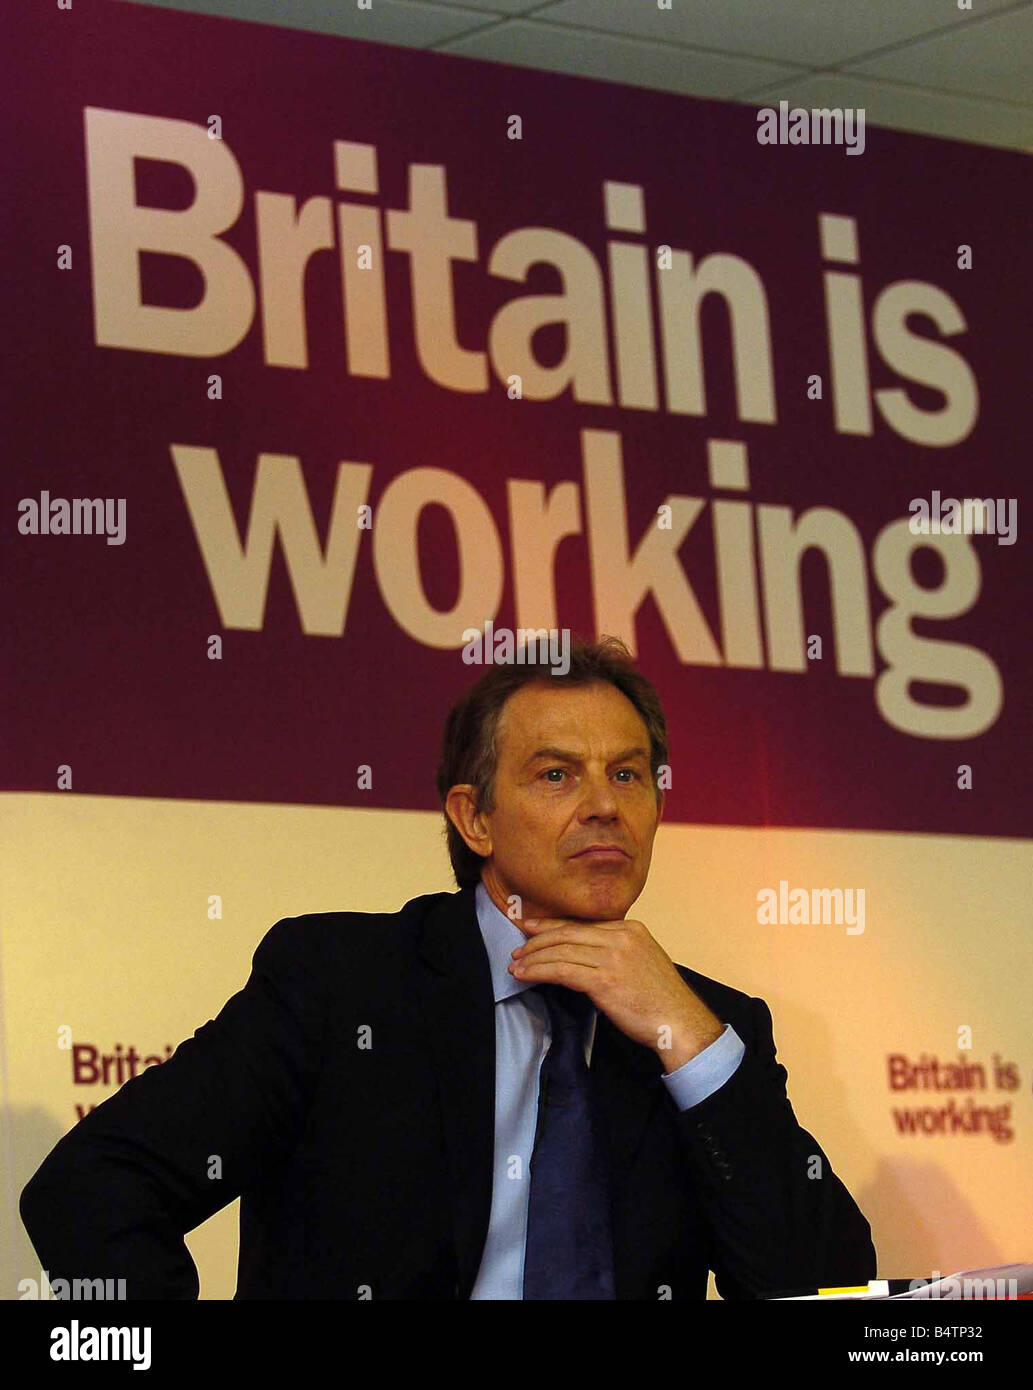 Premierminister Tony Blair in Leeds zur Förderung der lokalen Wahlkampagne sitzen vor Motto Großbritannien arbeitet Parolen, die Kampagnen, die den Hals berühren Kinn mit der Hand schieben Lippen vorausschauendes Denken Ausdruck nachdenklichen Ausdruck kritischen vorsichtig Mai 2004 Stockfoto